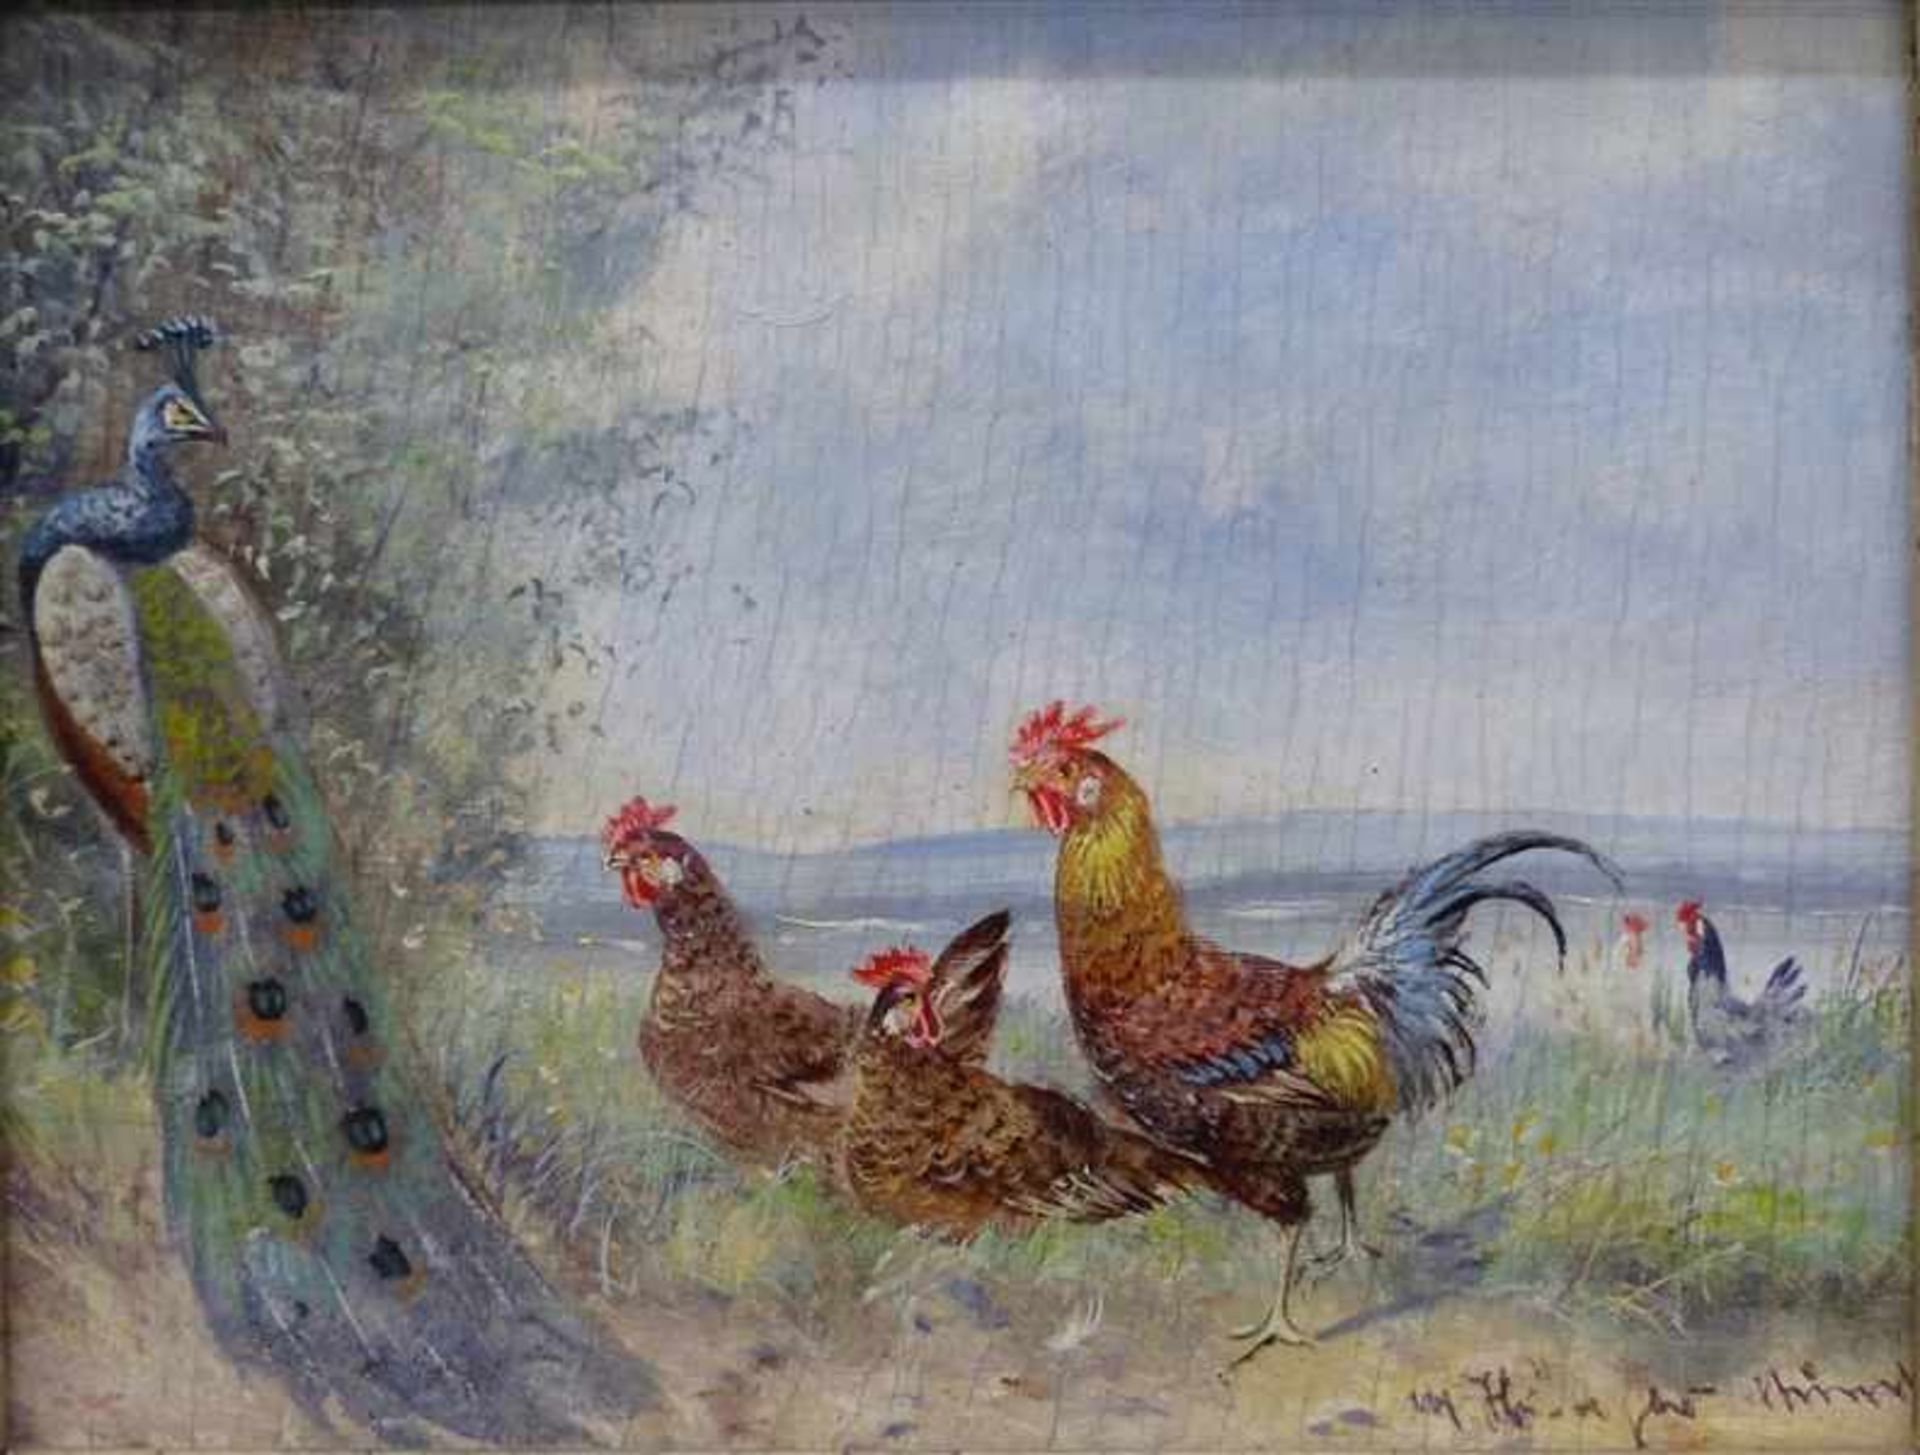 Hänger, Max I1874 - 1941, Paar Ölgemälde auf Holz, Gockel, Hühner und Pfauen in ländlicher Umgebung, - Bild 5 aus 8